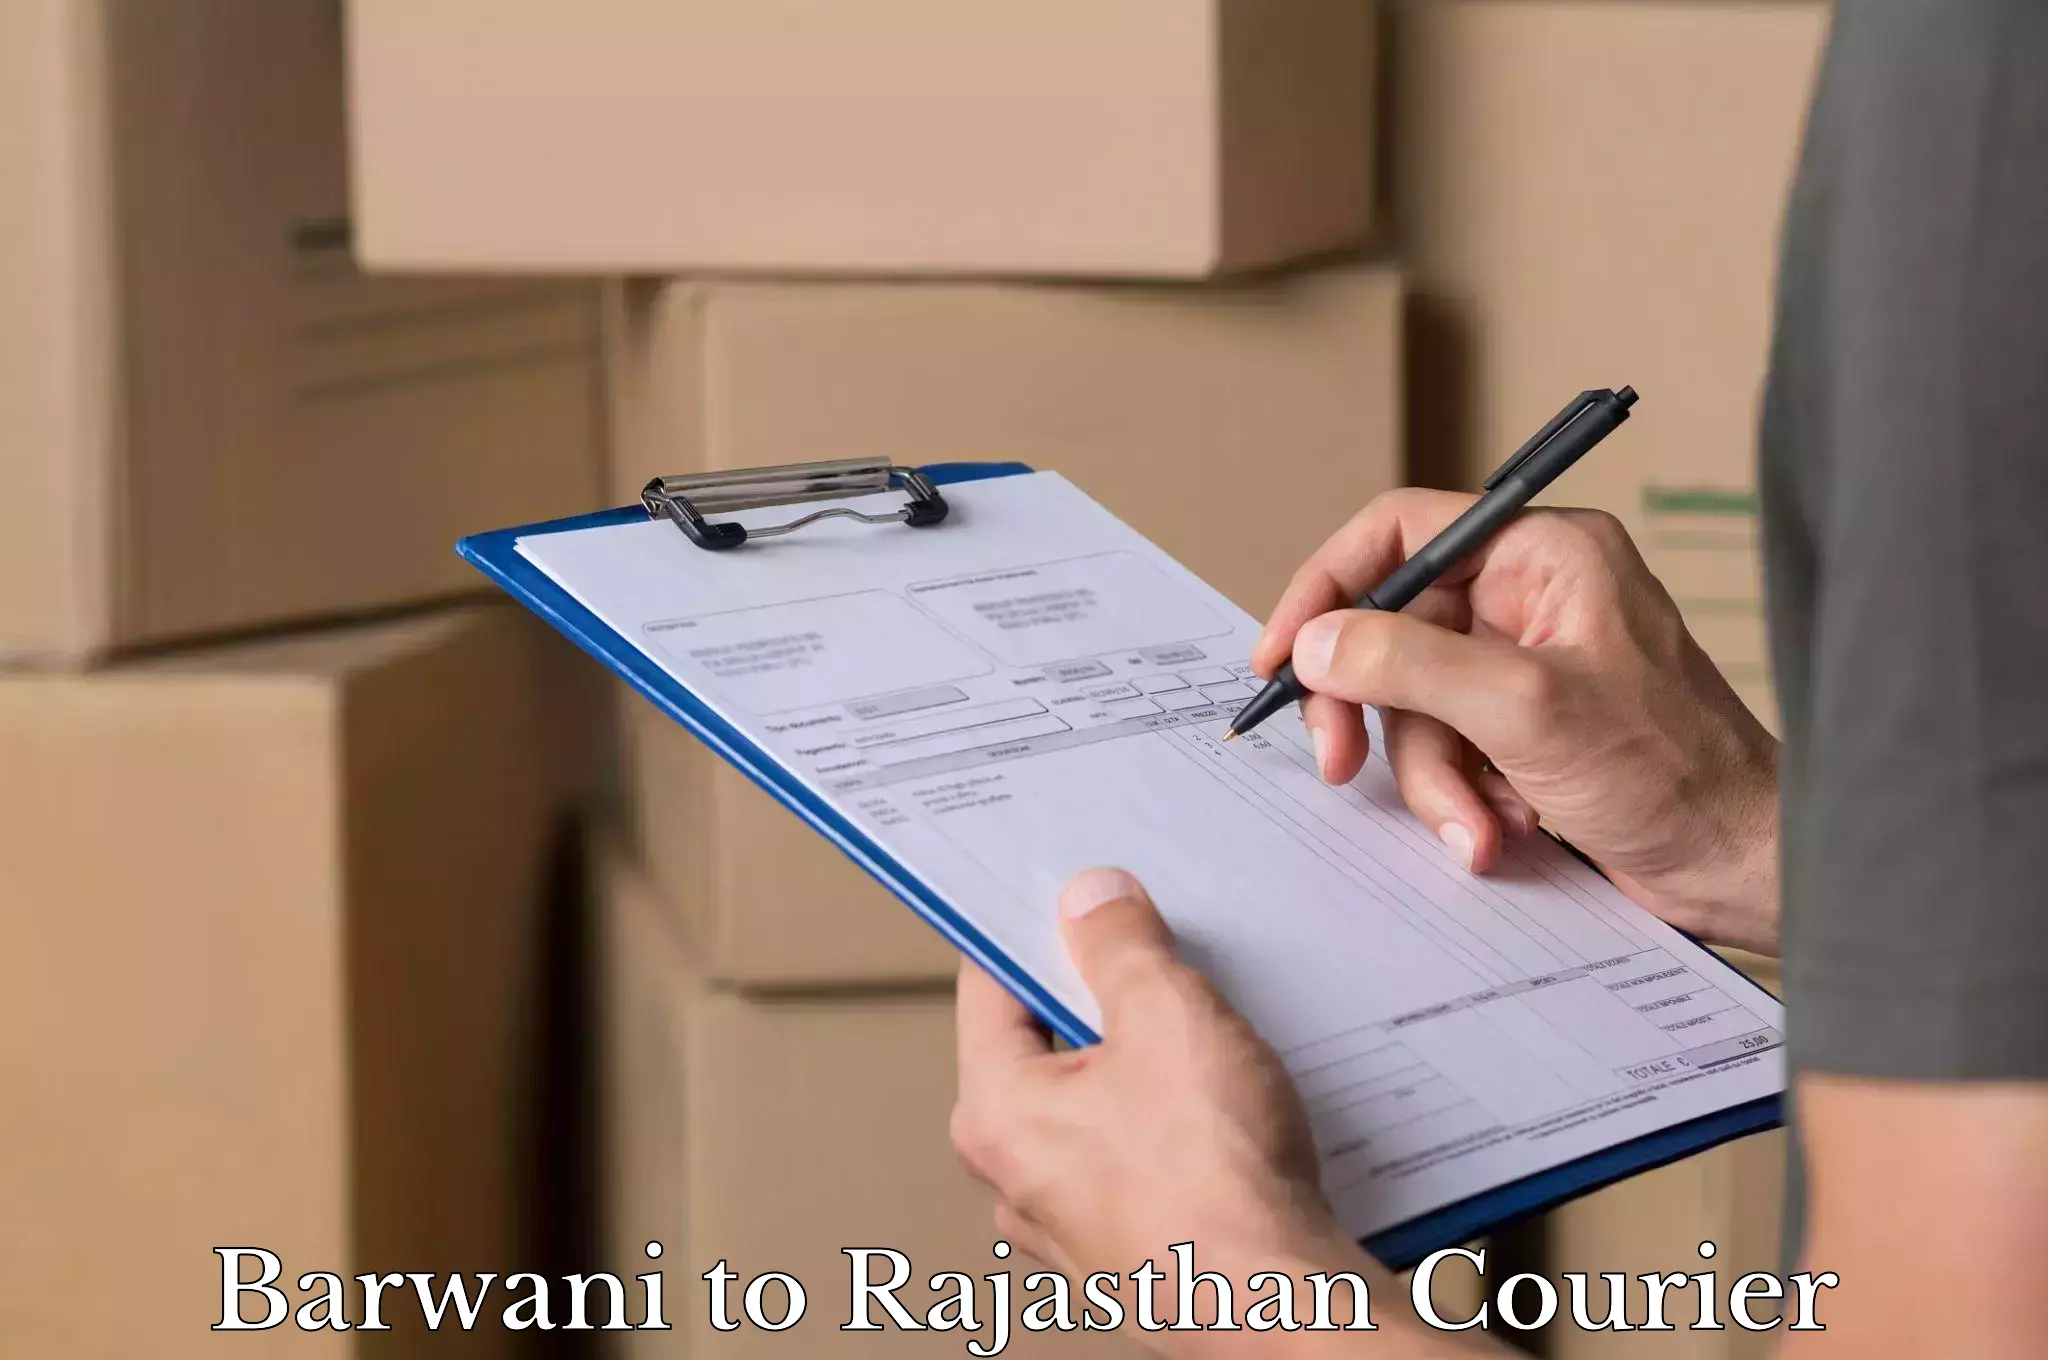 Baggage shipping experts Barwani to Rajasthan